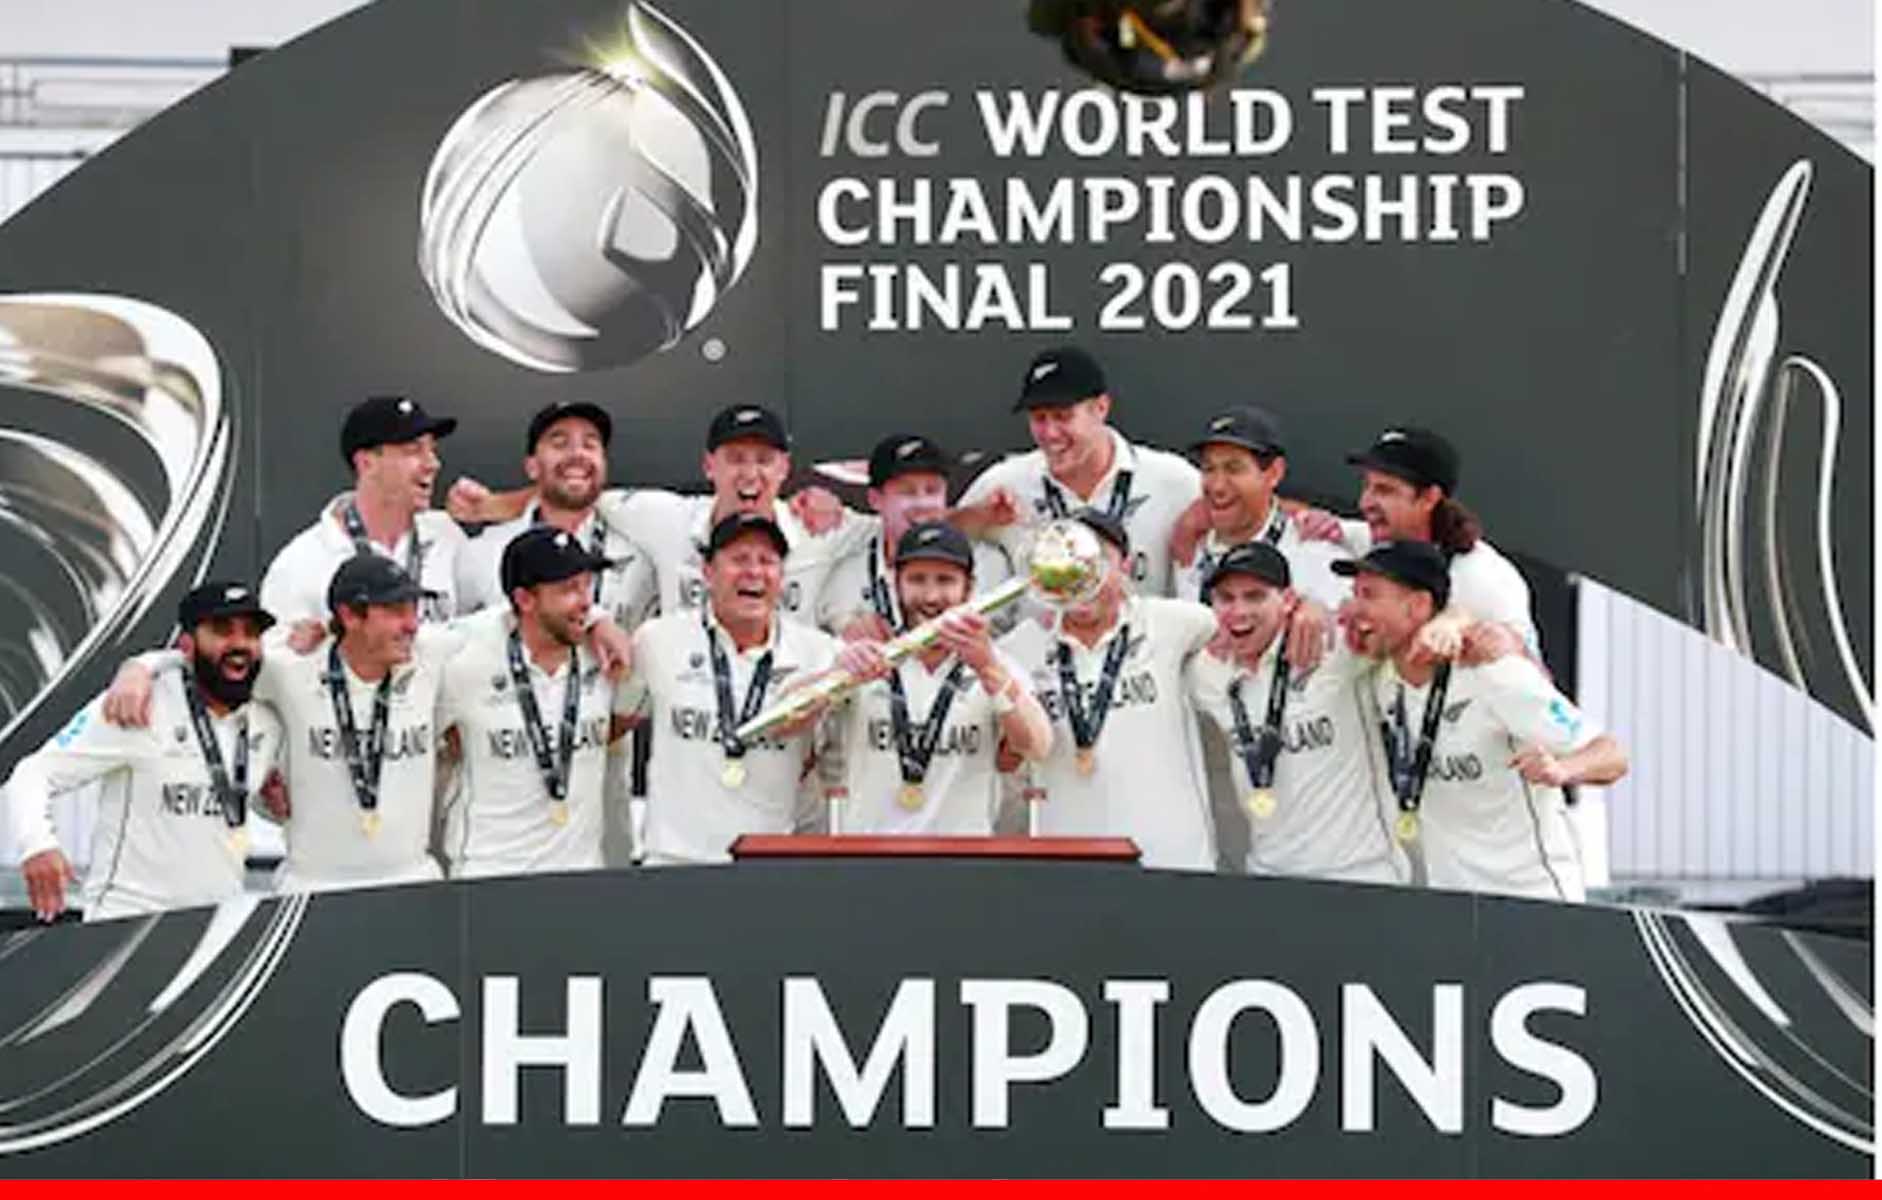 ICC ने वर्ल्ड टेस्ट चैंपियनशिप के प्वाइंट सिस्टम में किया बदलाव, एक मैच जीतने पर मिलेंगे 12 अंक